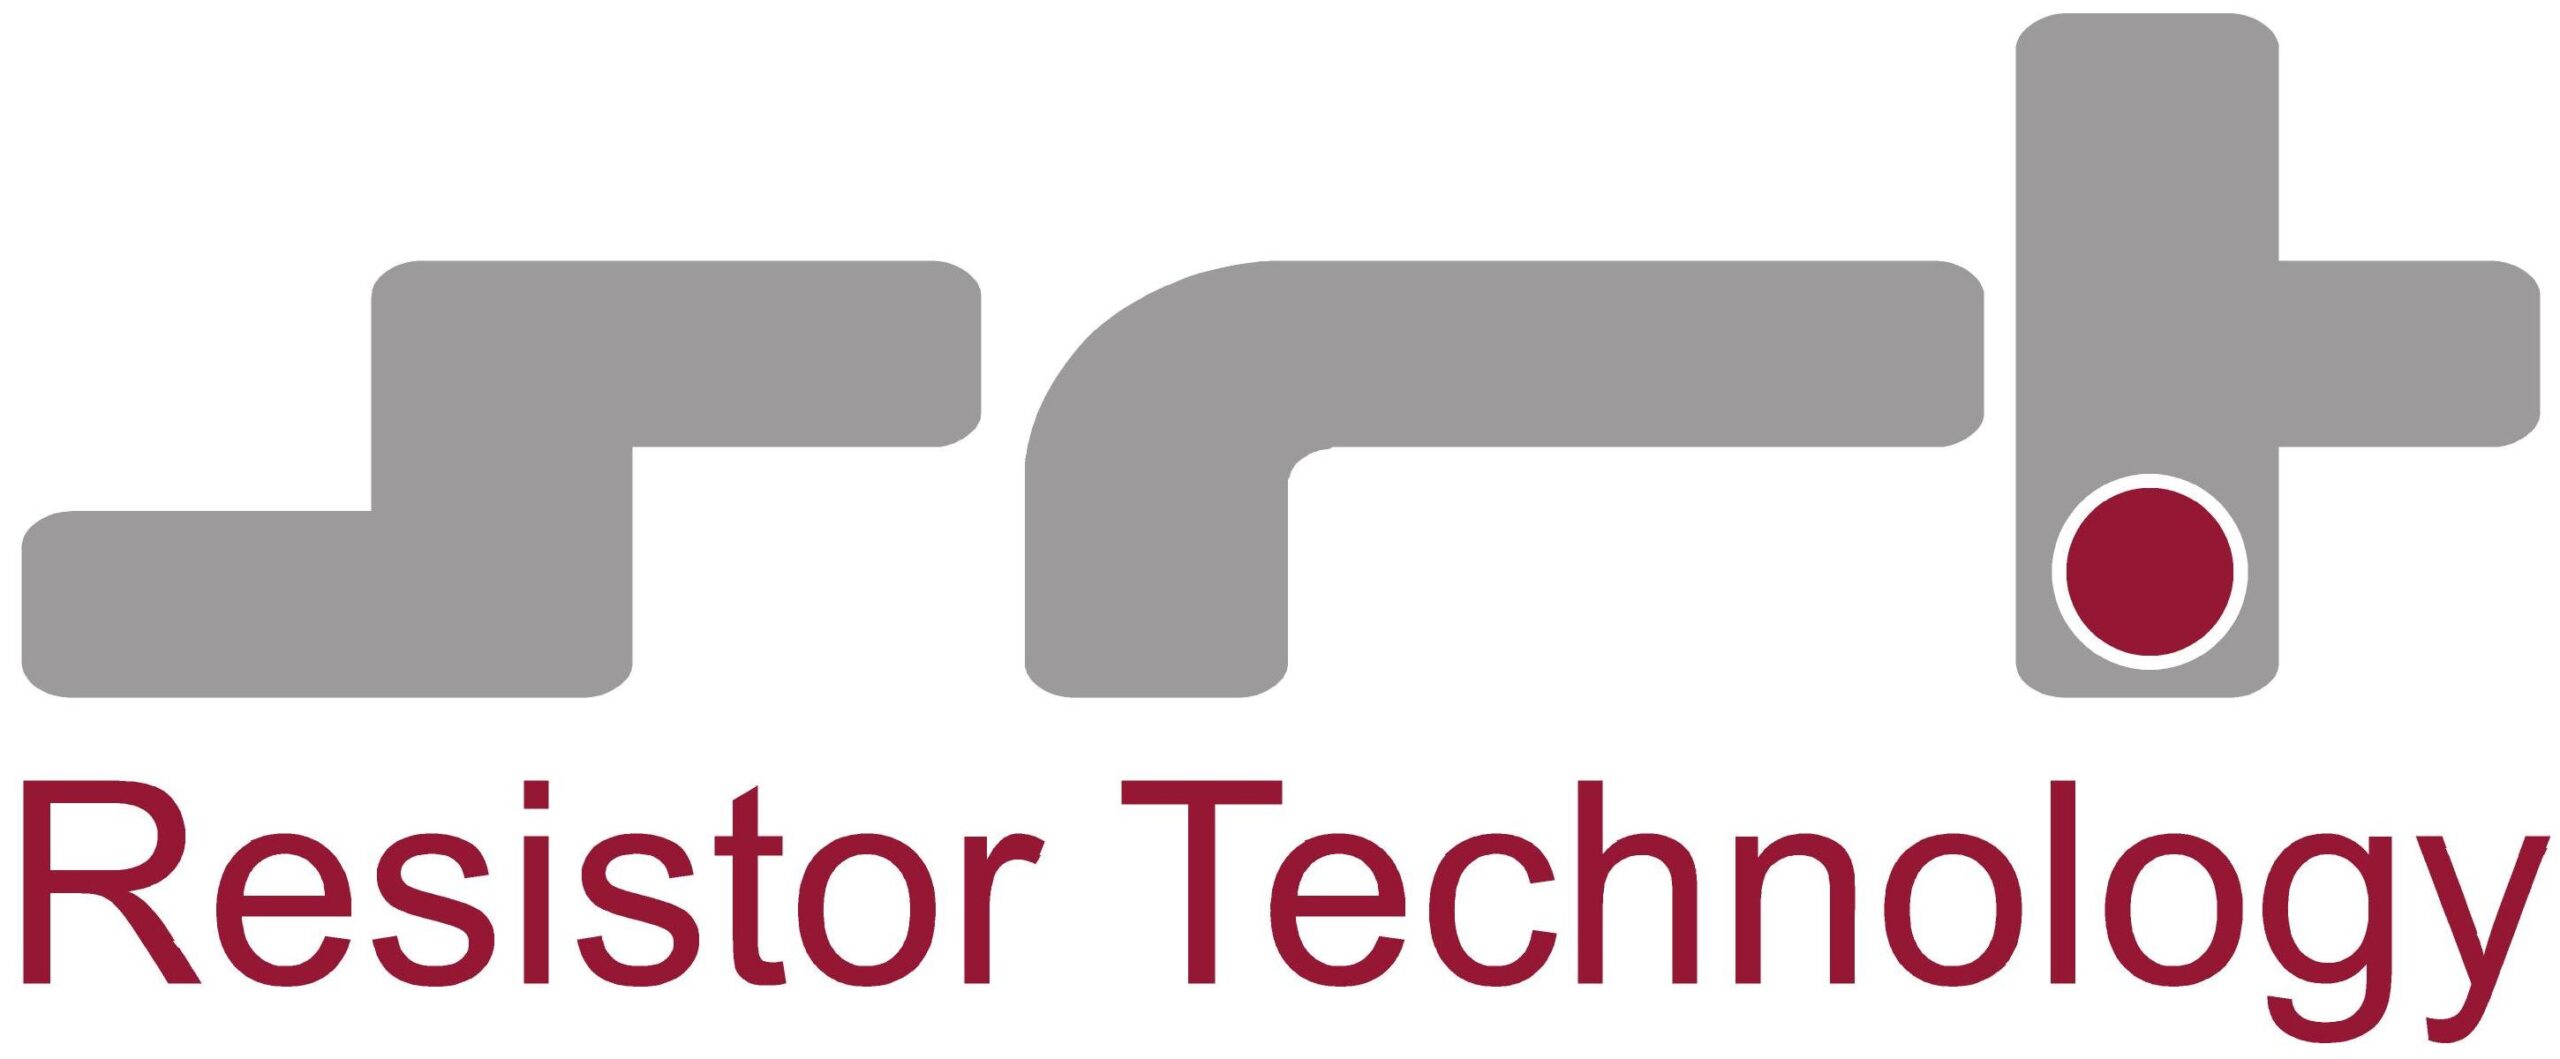 SRT Resistor Technology Firmenlogo 2020